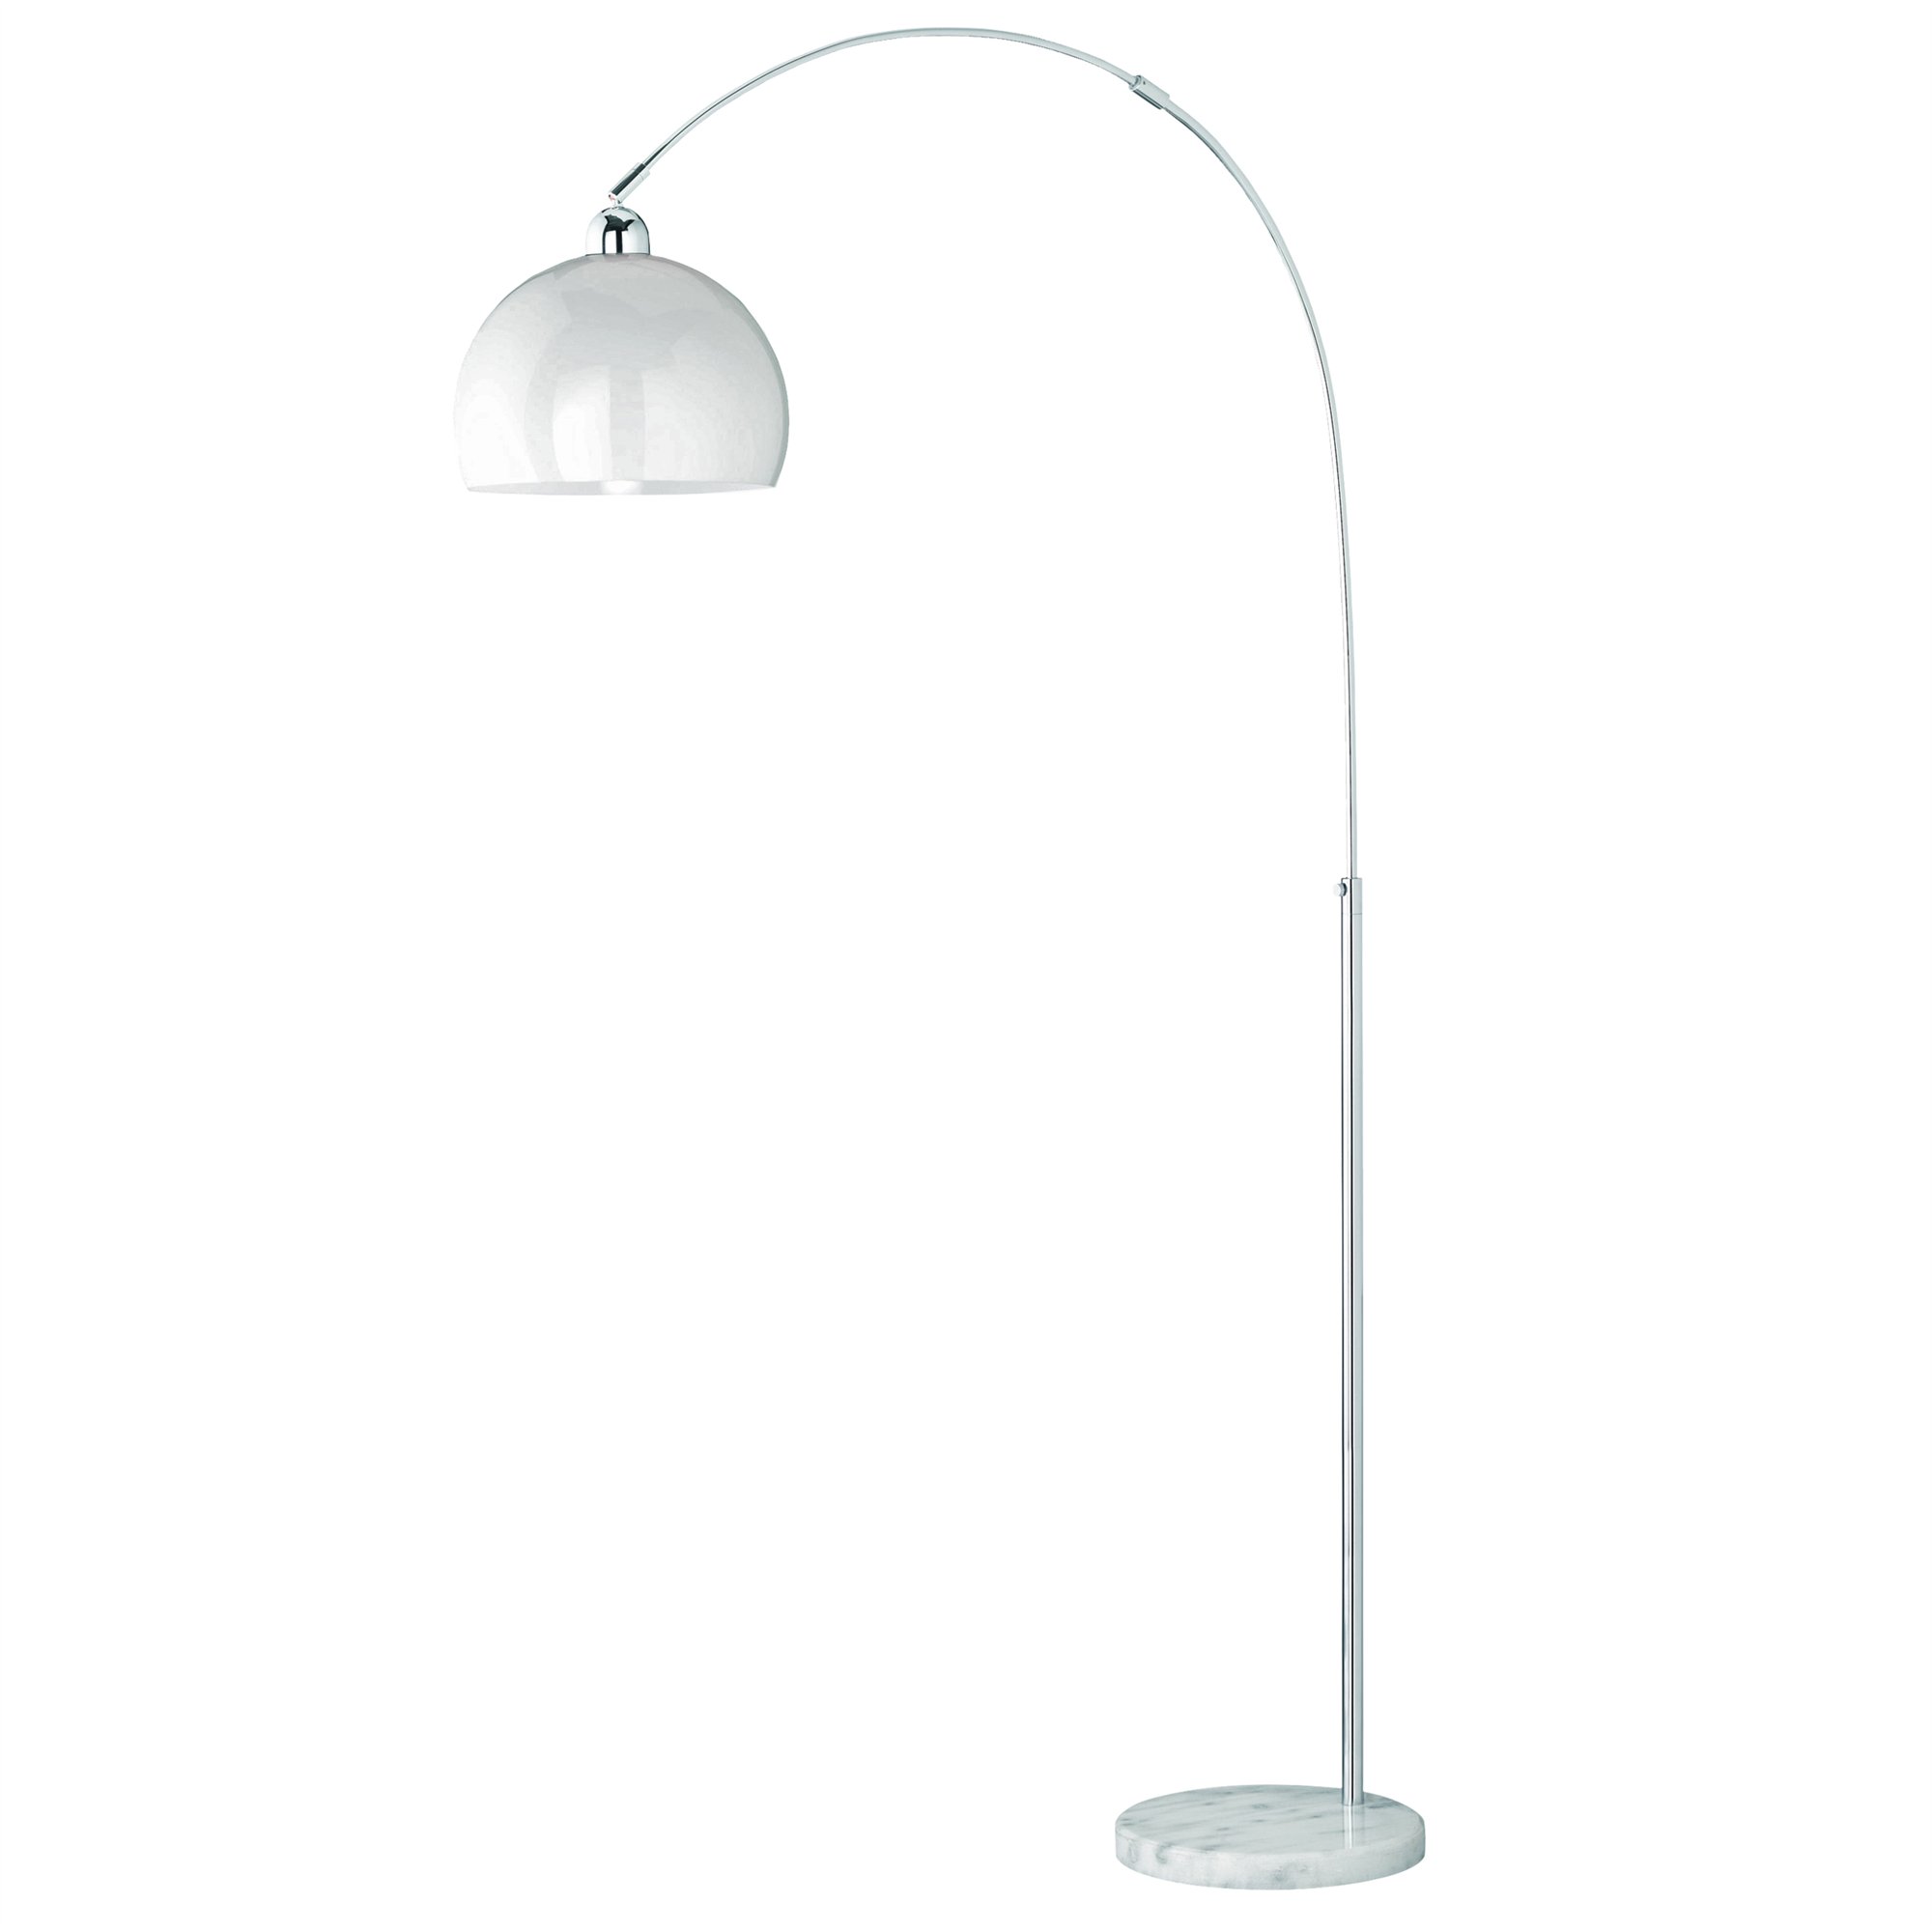 Lámpara de pie Altura Ajustable 150 - 210 cm, Pantalla 30 cm, Base Marmol Real, Cuerpo metálico.